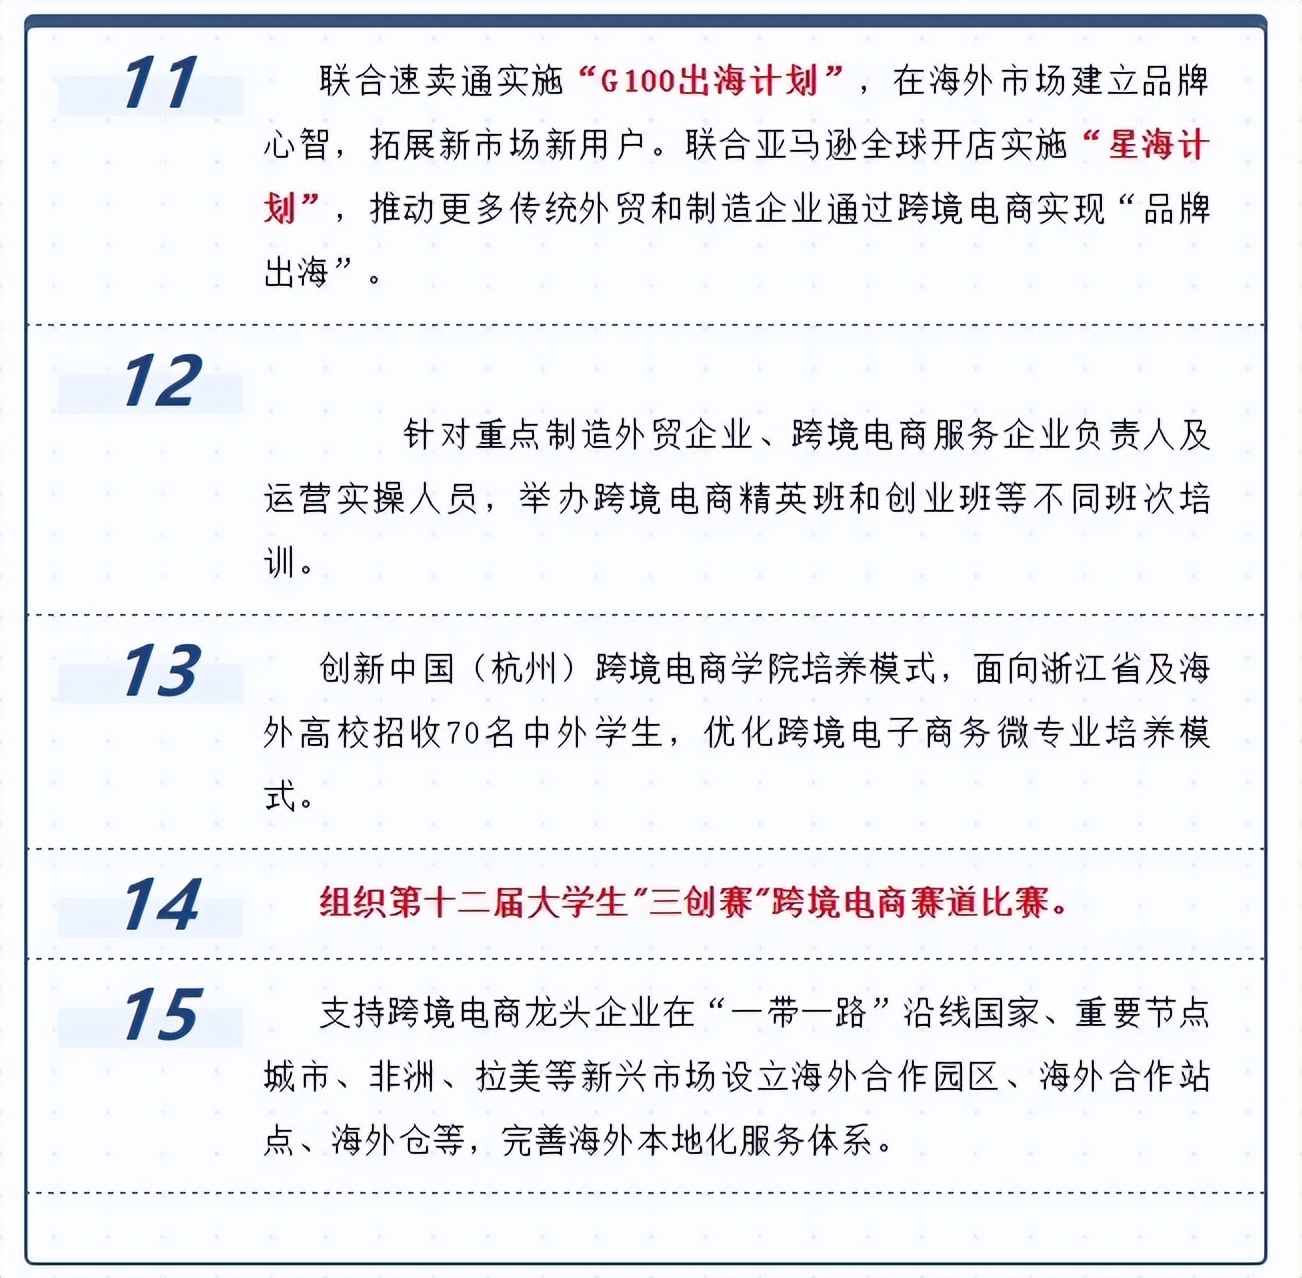 杭州<a href='https://www.zhouxiaohui.cn/kuajing/
' target='_blank'>跨境电商</a>发布15条“暖心助企 产业共富”行动举措-第3张图片-周小辉博客